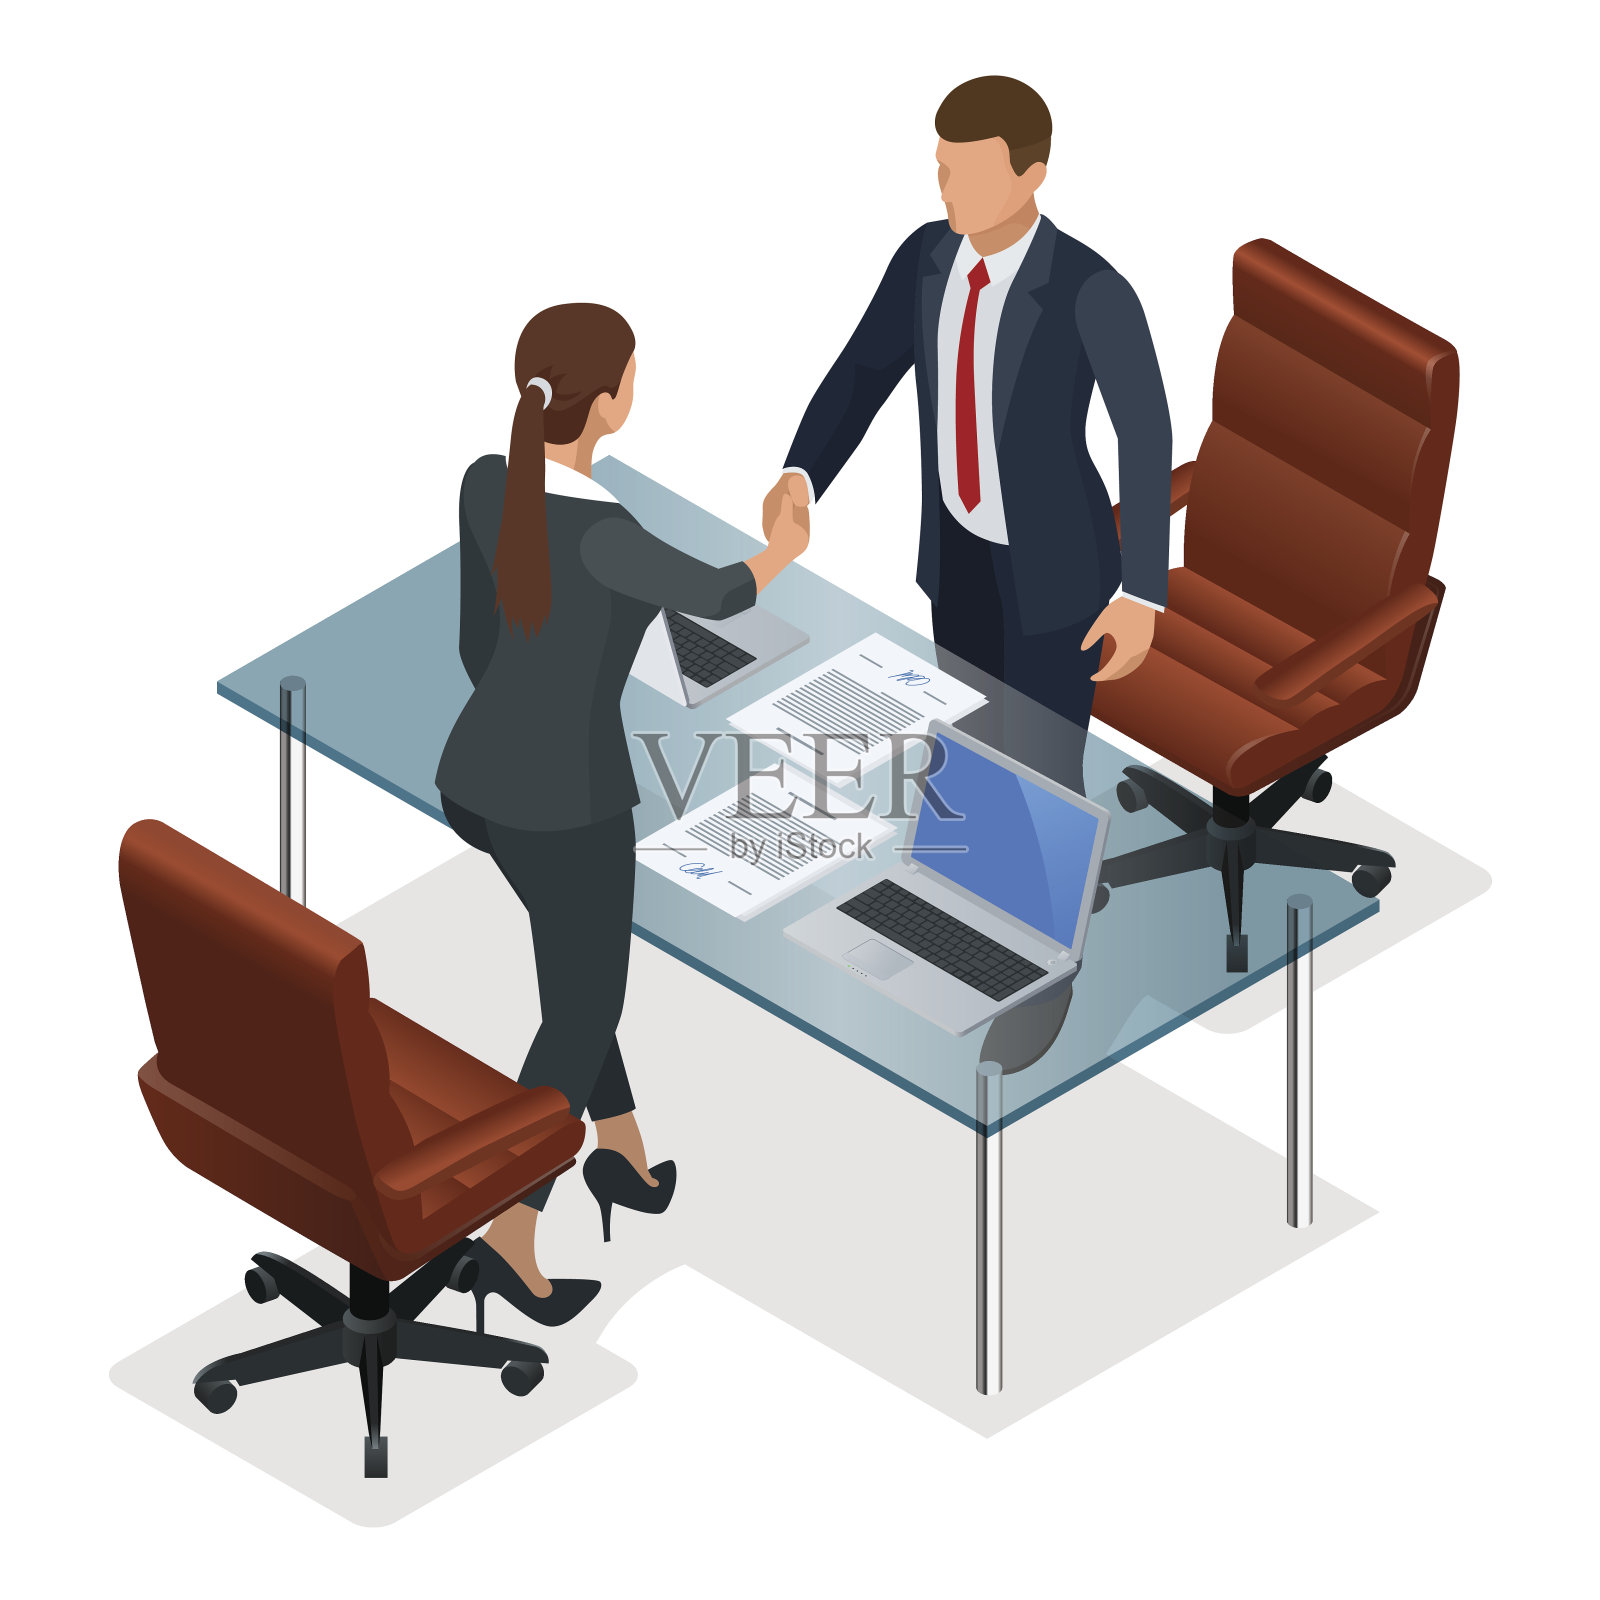 商务人士在办公室谈判或面试后握手。富有成效的伙伴关系的概念。建设性的商业对抗等距矢量插图设计元素图片